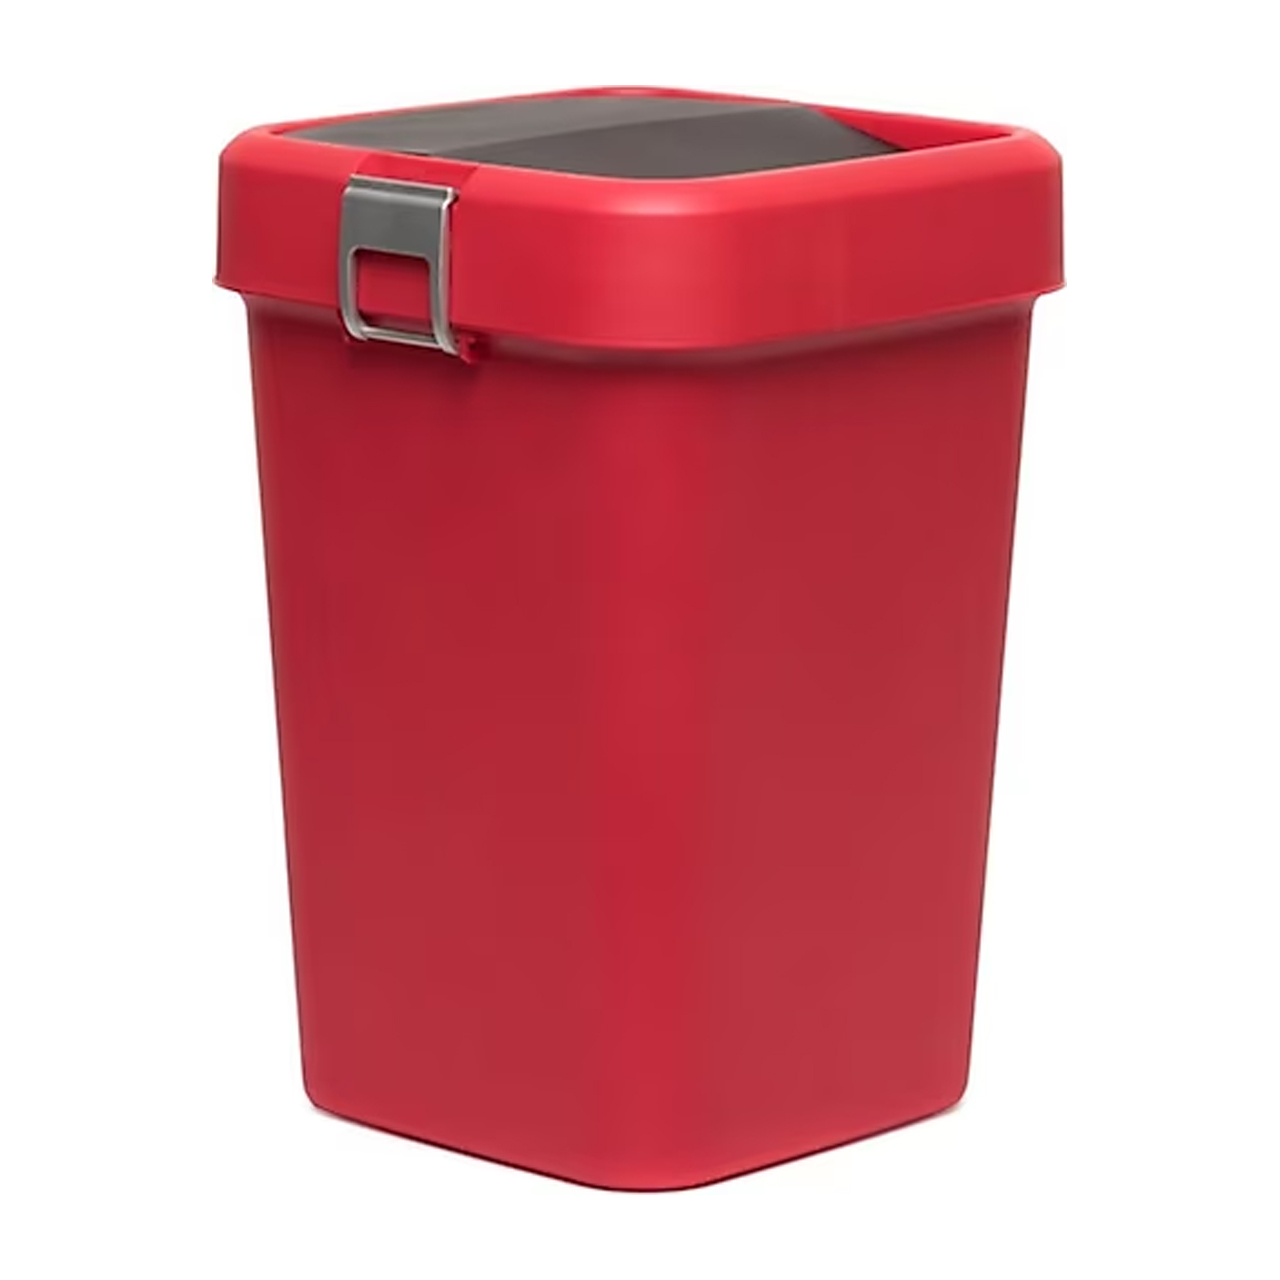 سطل زباله موتک مدل COMFORT کد 8LT-84496